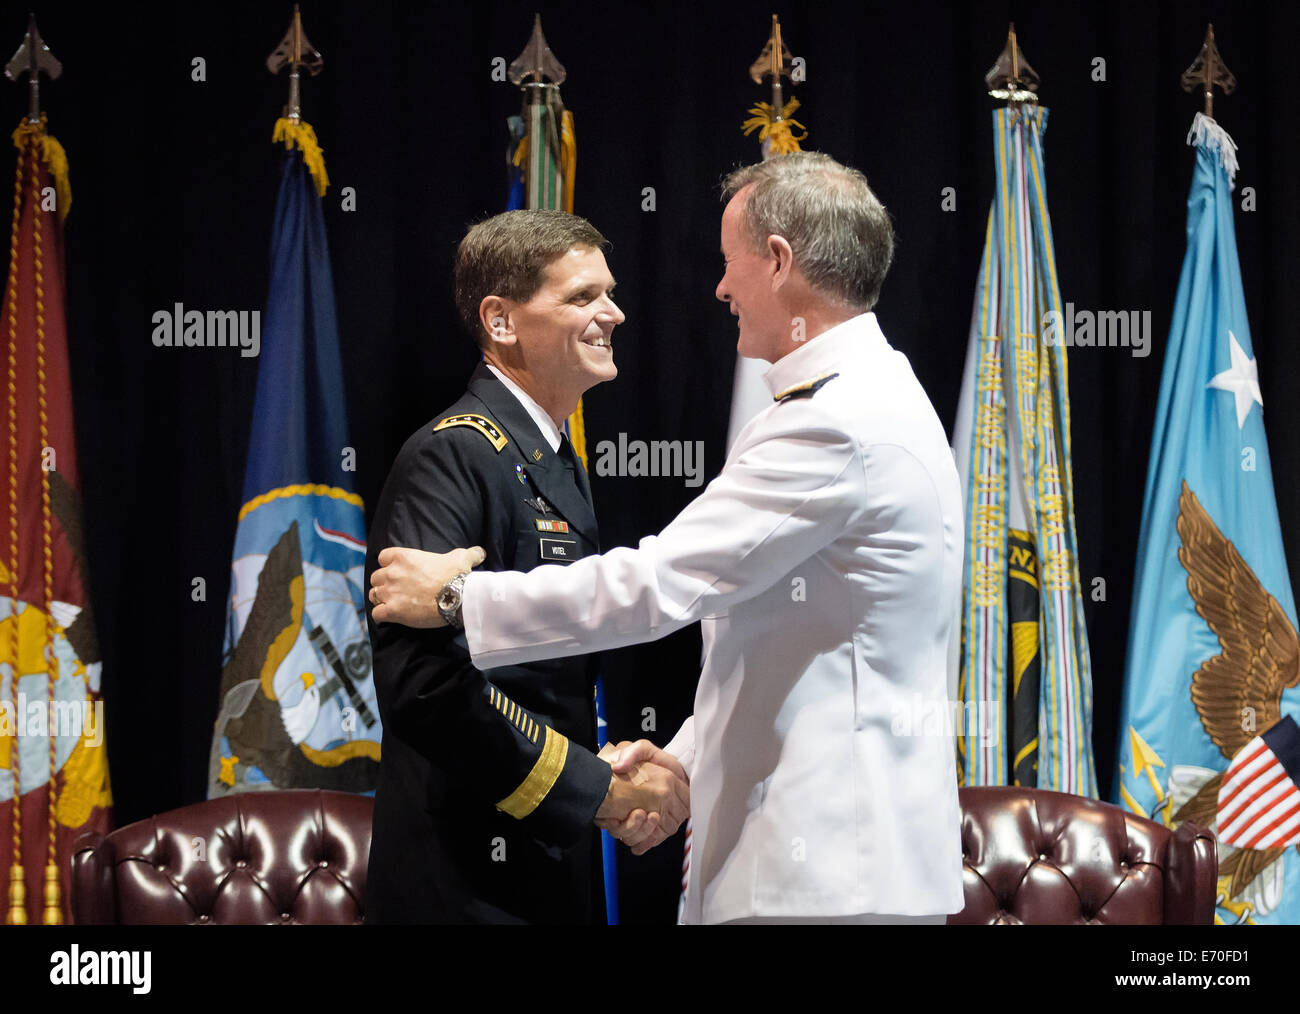 US-Armee General Joseph L. Votel III ist von Admiral William H. McRaven während seiner Förderung-Zeremonie Special Operations Command 28. August 2014 in Tampa, Florida den Kopf in den Ruhestand beglückwünscht. Votel ersetzt McRaven. Stockfoto